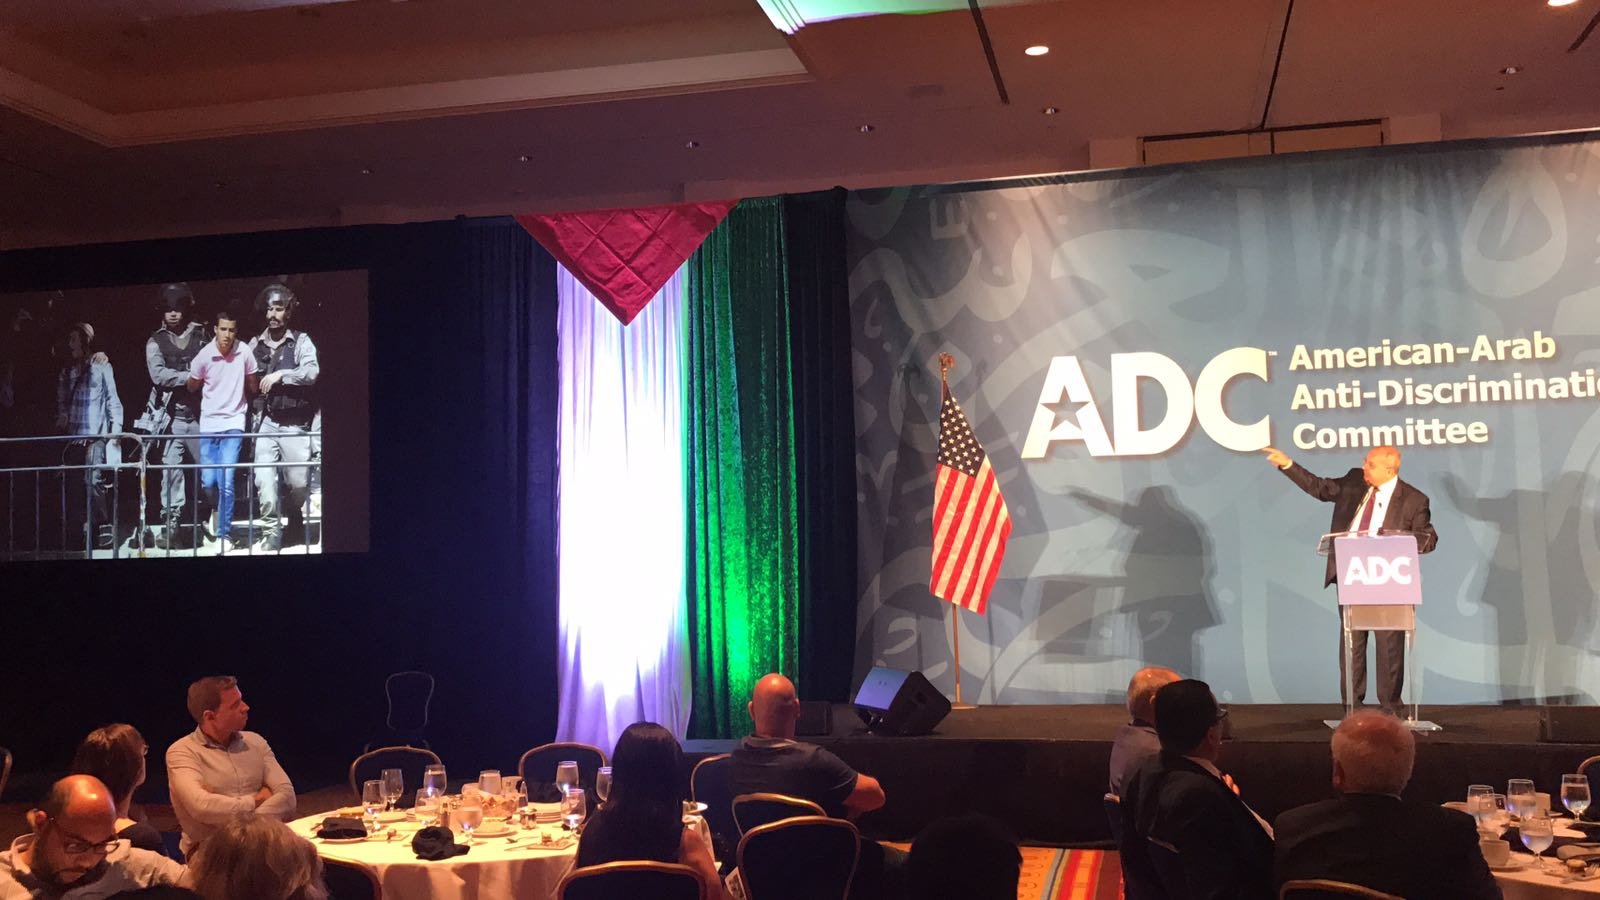 الطيبي يُلقي خطابا في واشنطن خلال مؤتمر اللجنة الأمريكية العربية لمكافحة التمييز-4